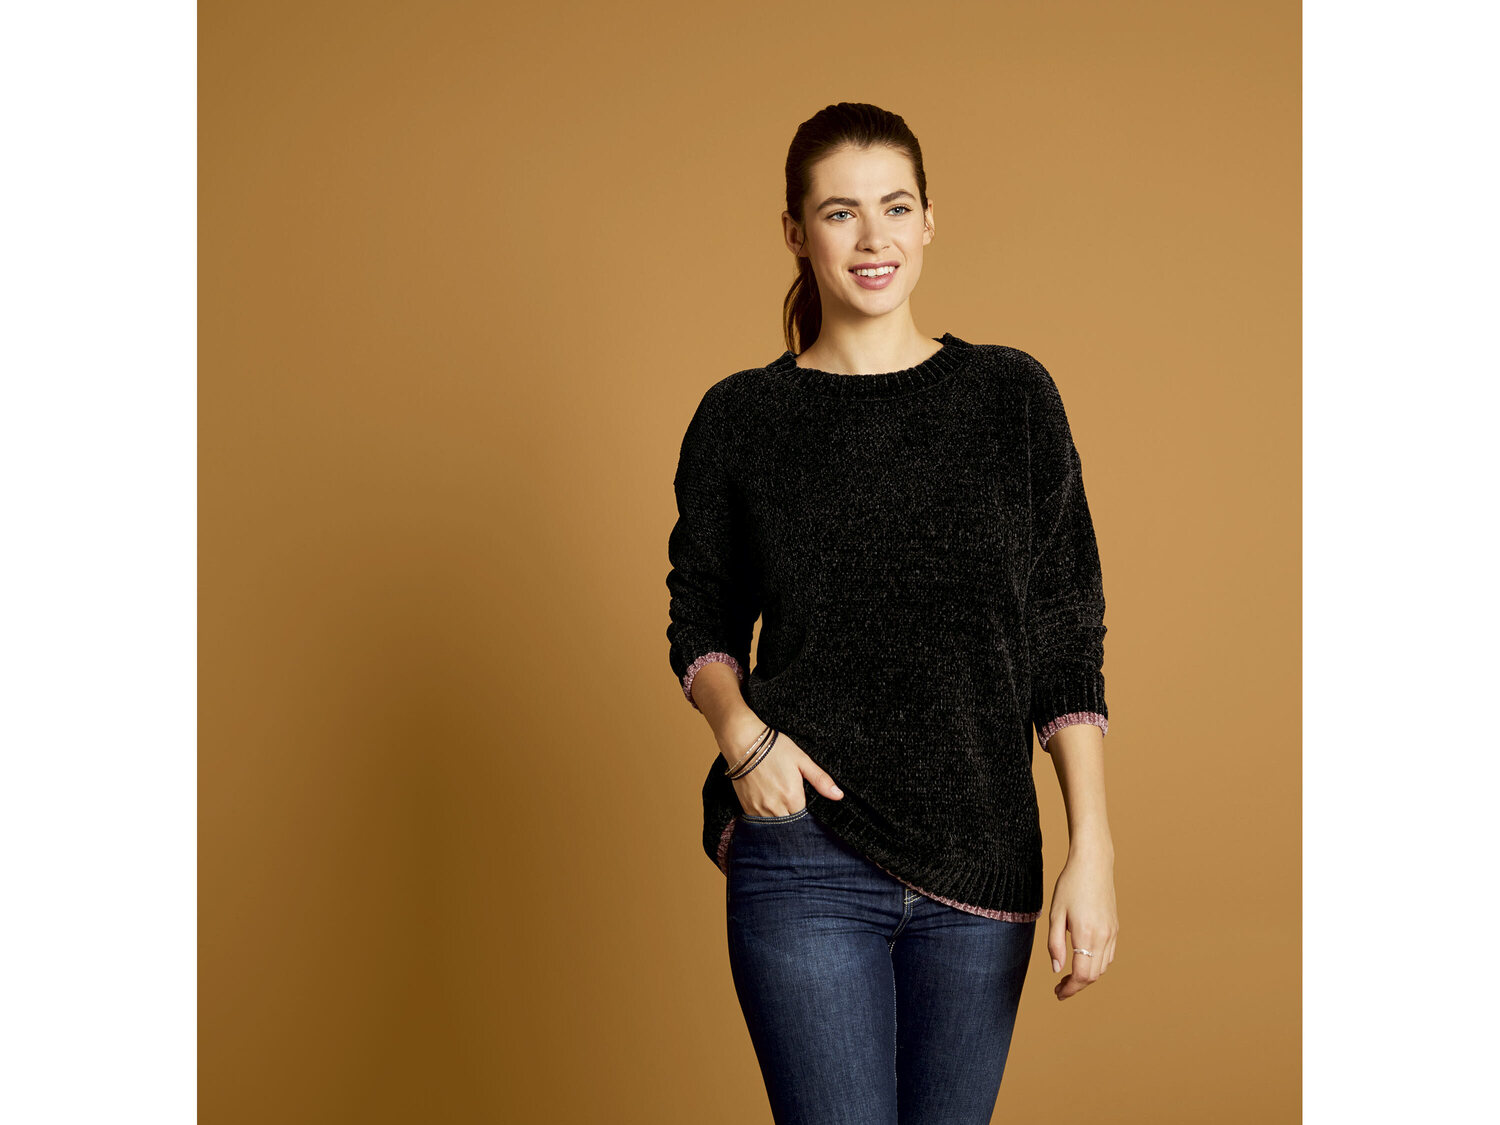 Sweter z szenili Esmara, cena 39,99 PLN 
- rozmiary: XS-L
- modny, gruby splot
- ...